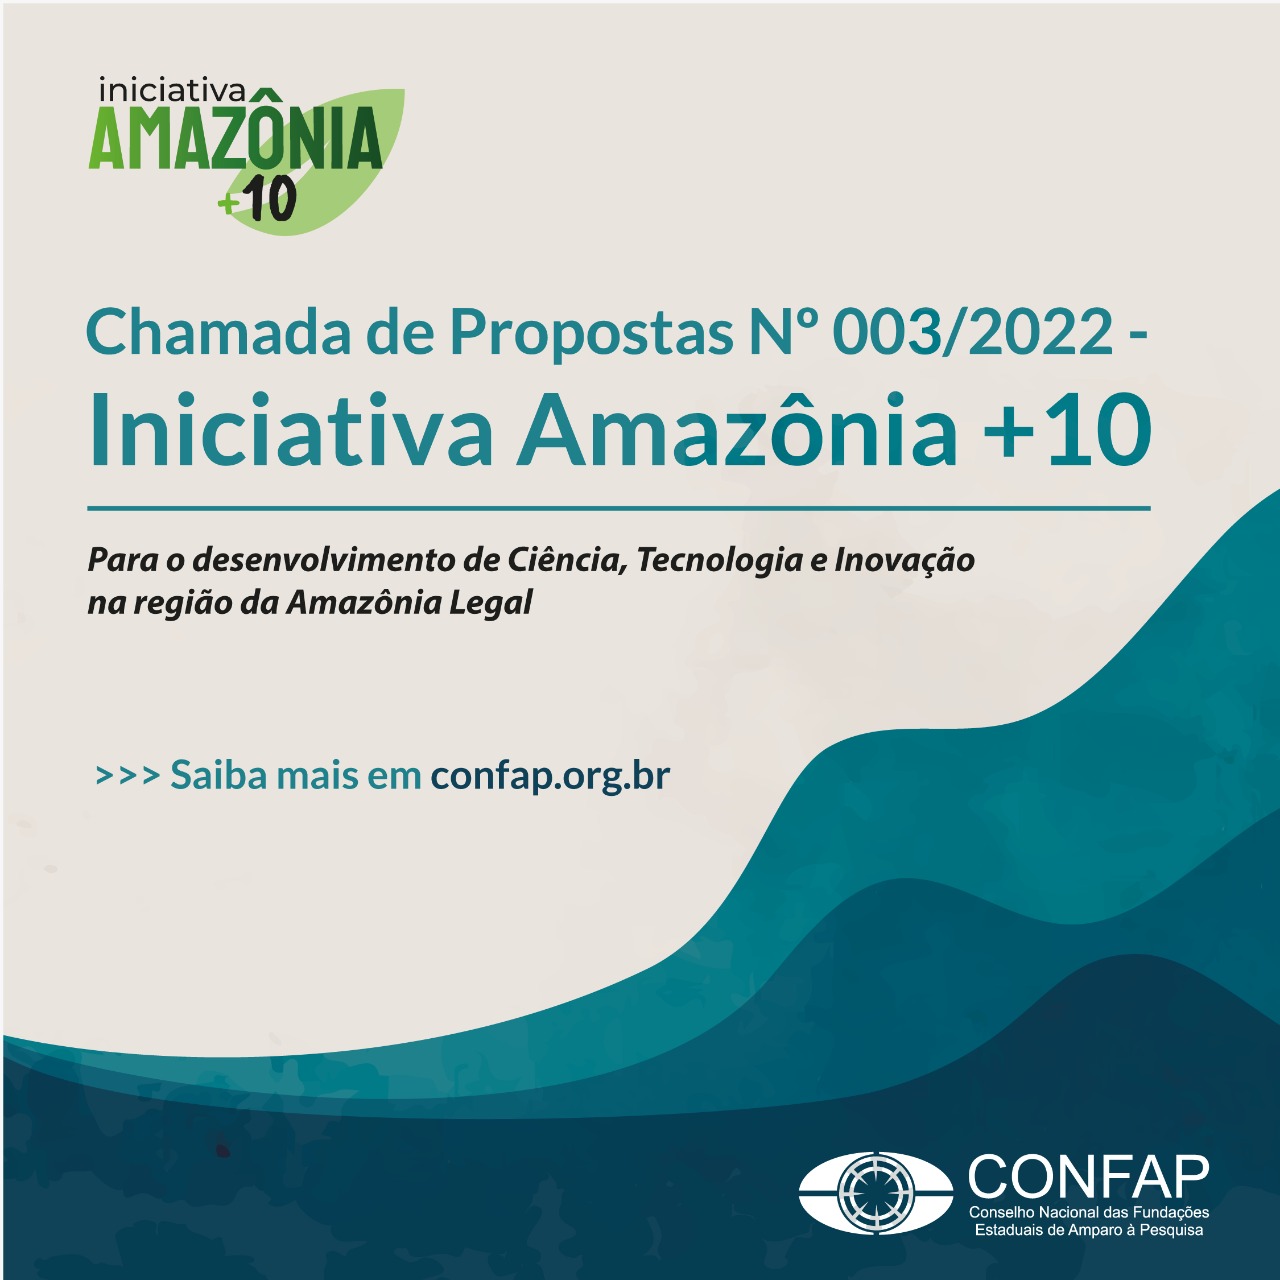 Confap lança chamada de propostas para apoiar a pesquisa científica na Amazônia